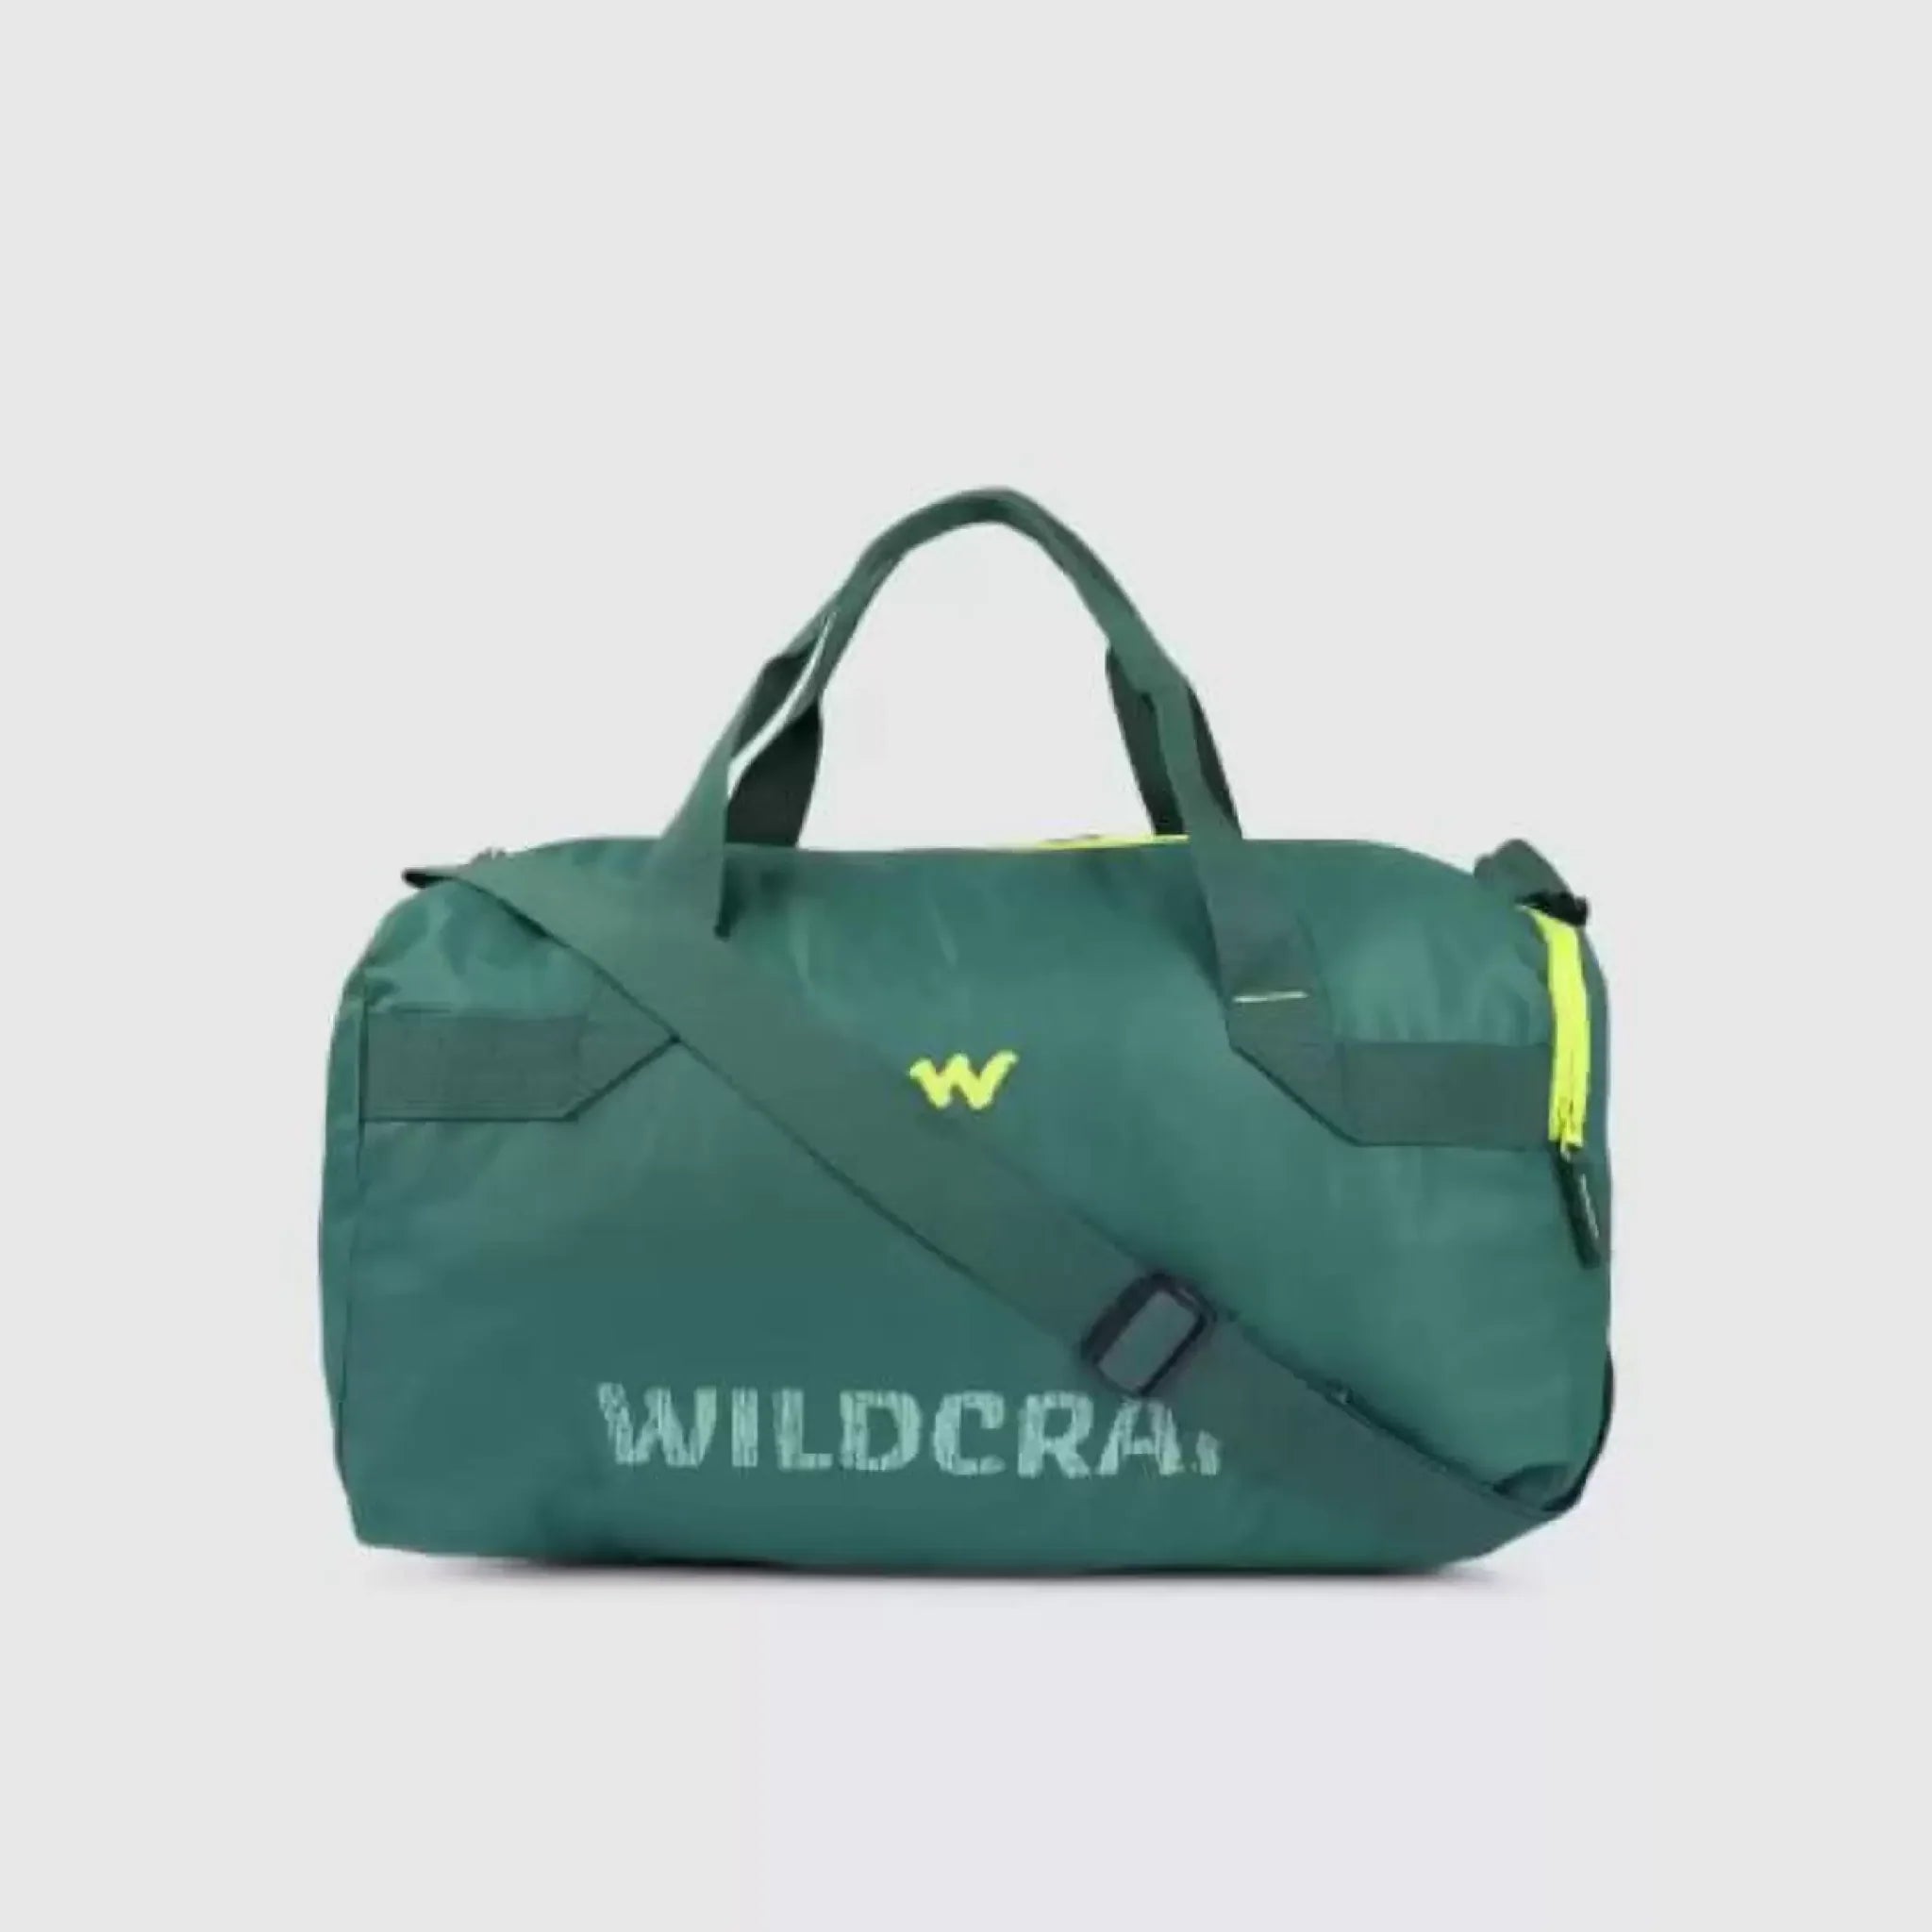 Wildcraft Duffle Bag Dfp 1